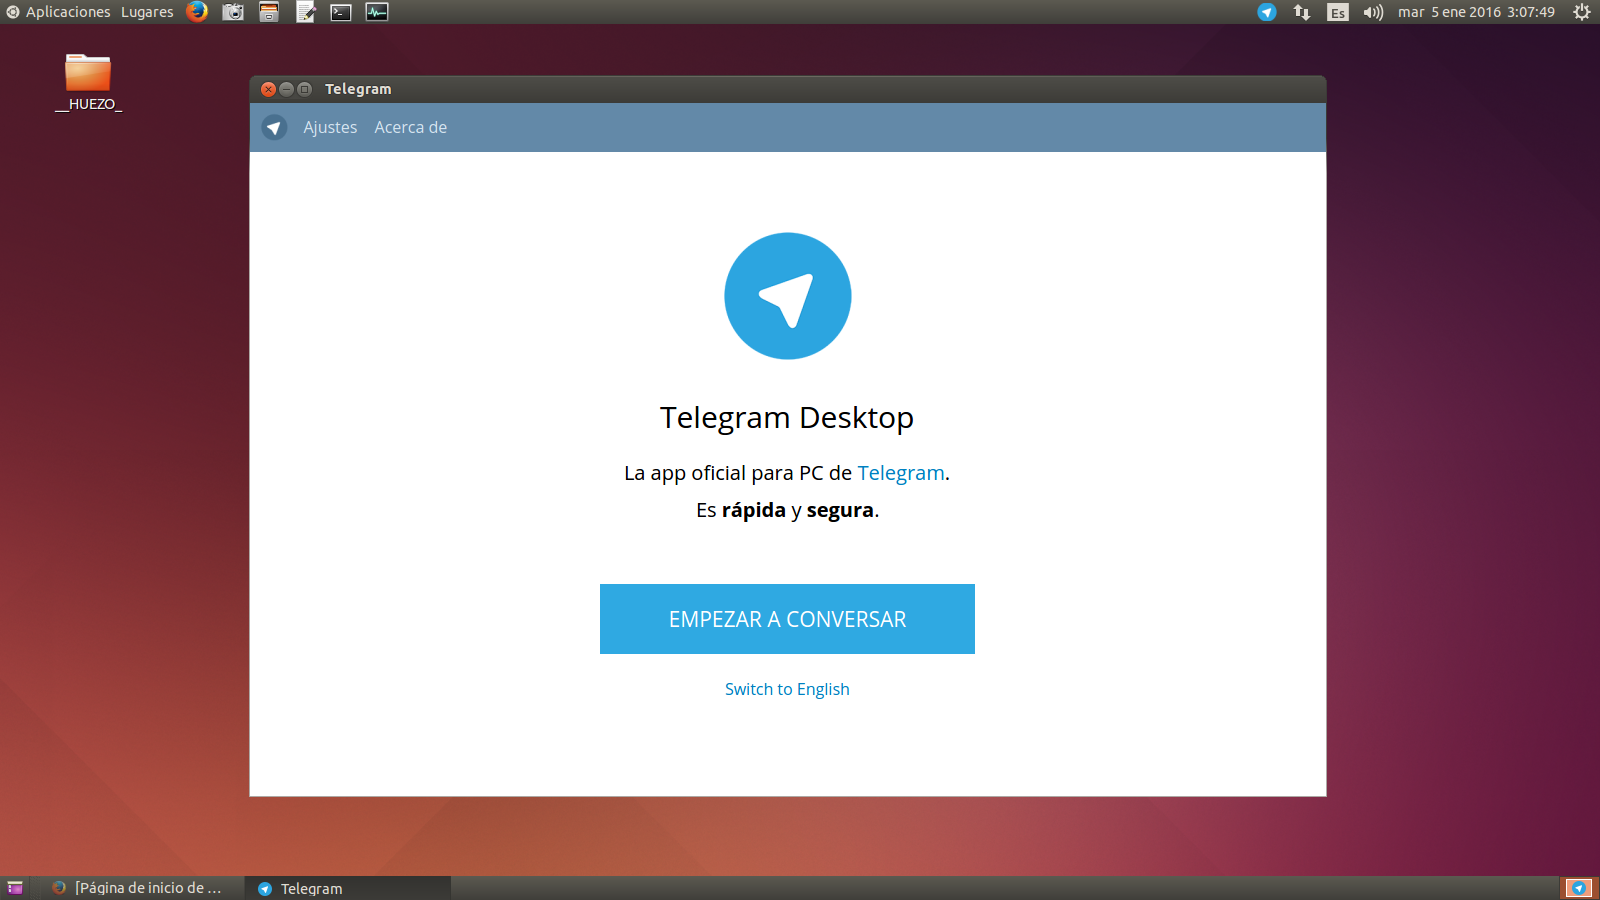 Telegram 1.3.7 desktop for mac